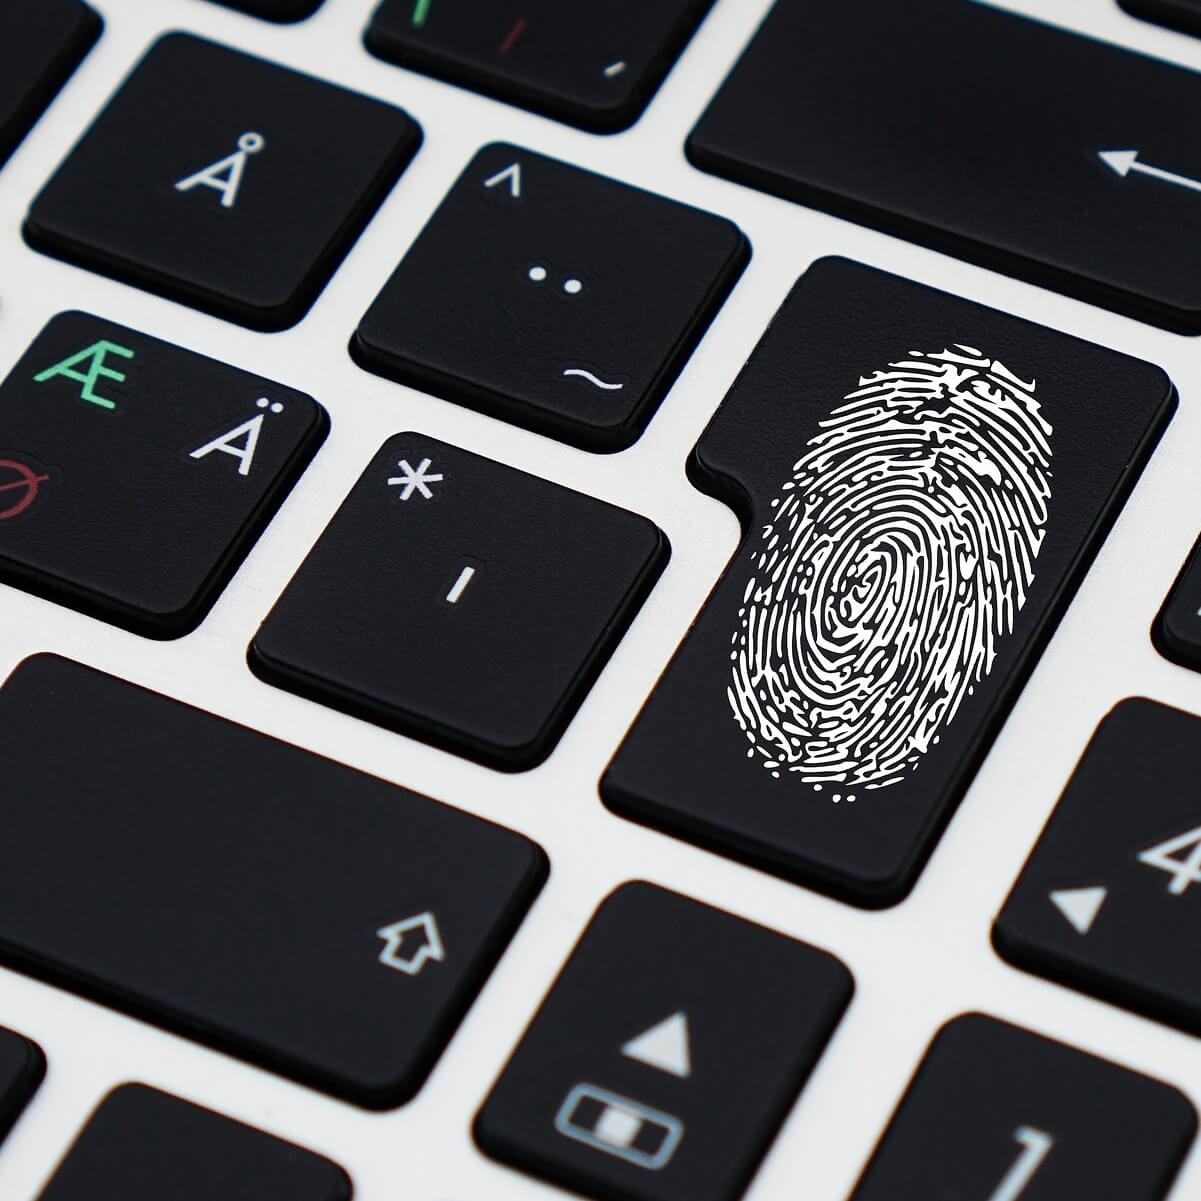 fingerprint reader for mac not working